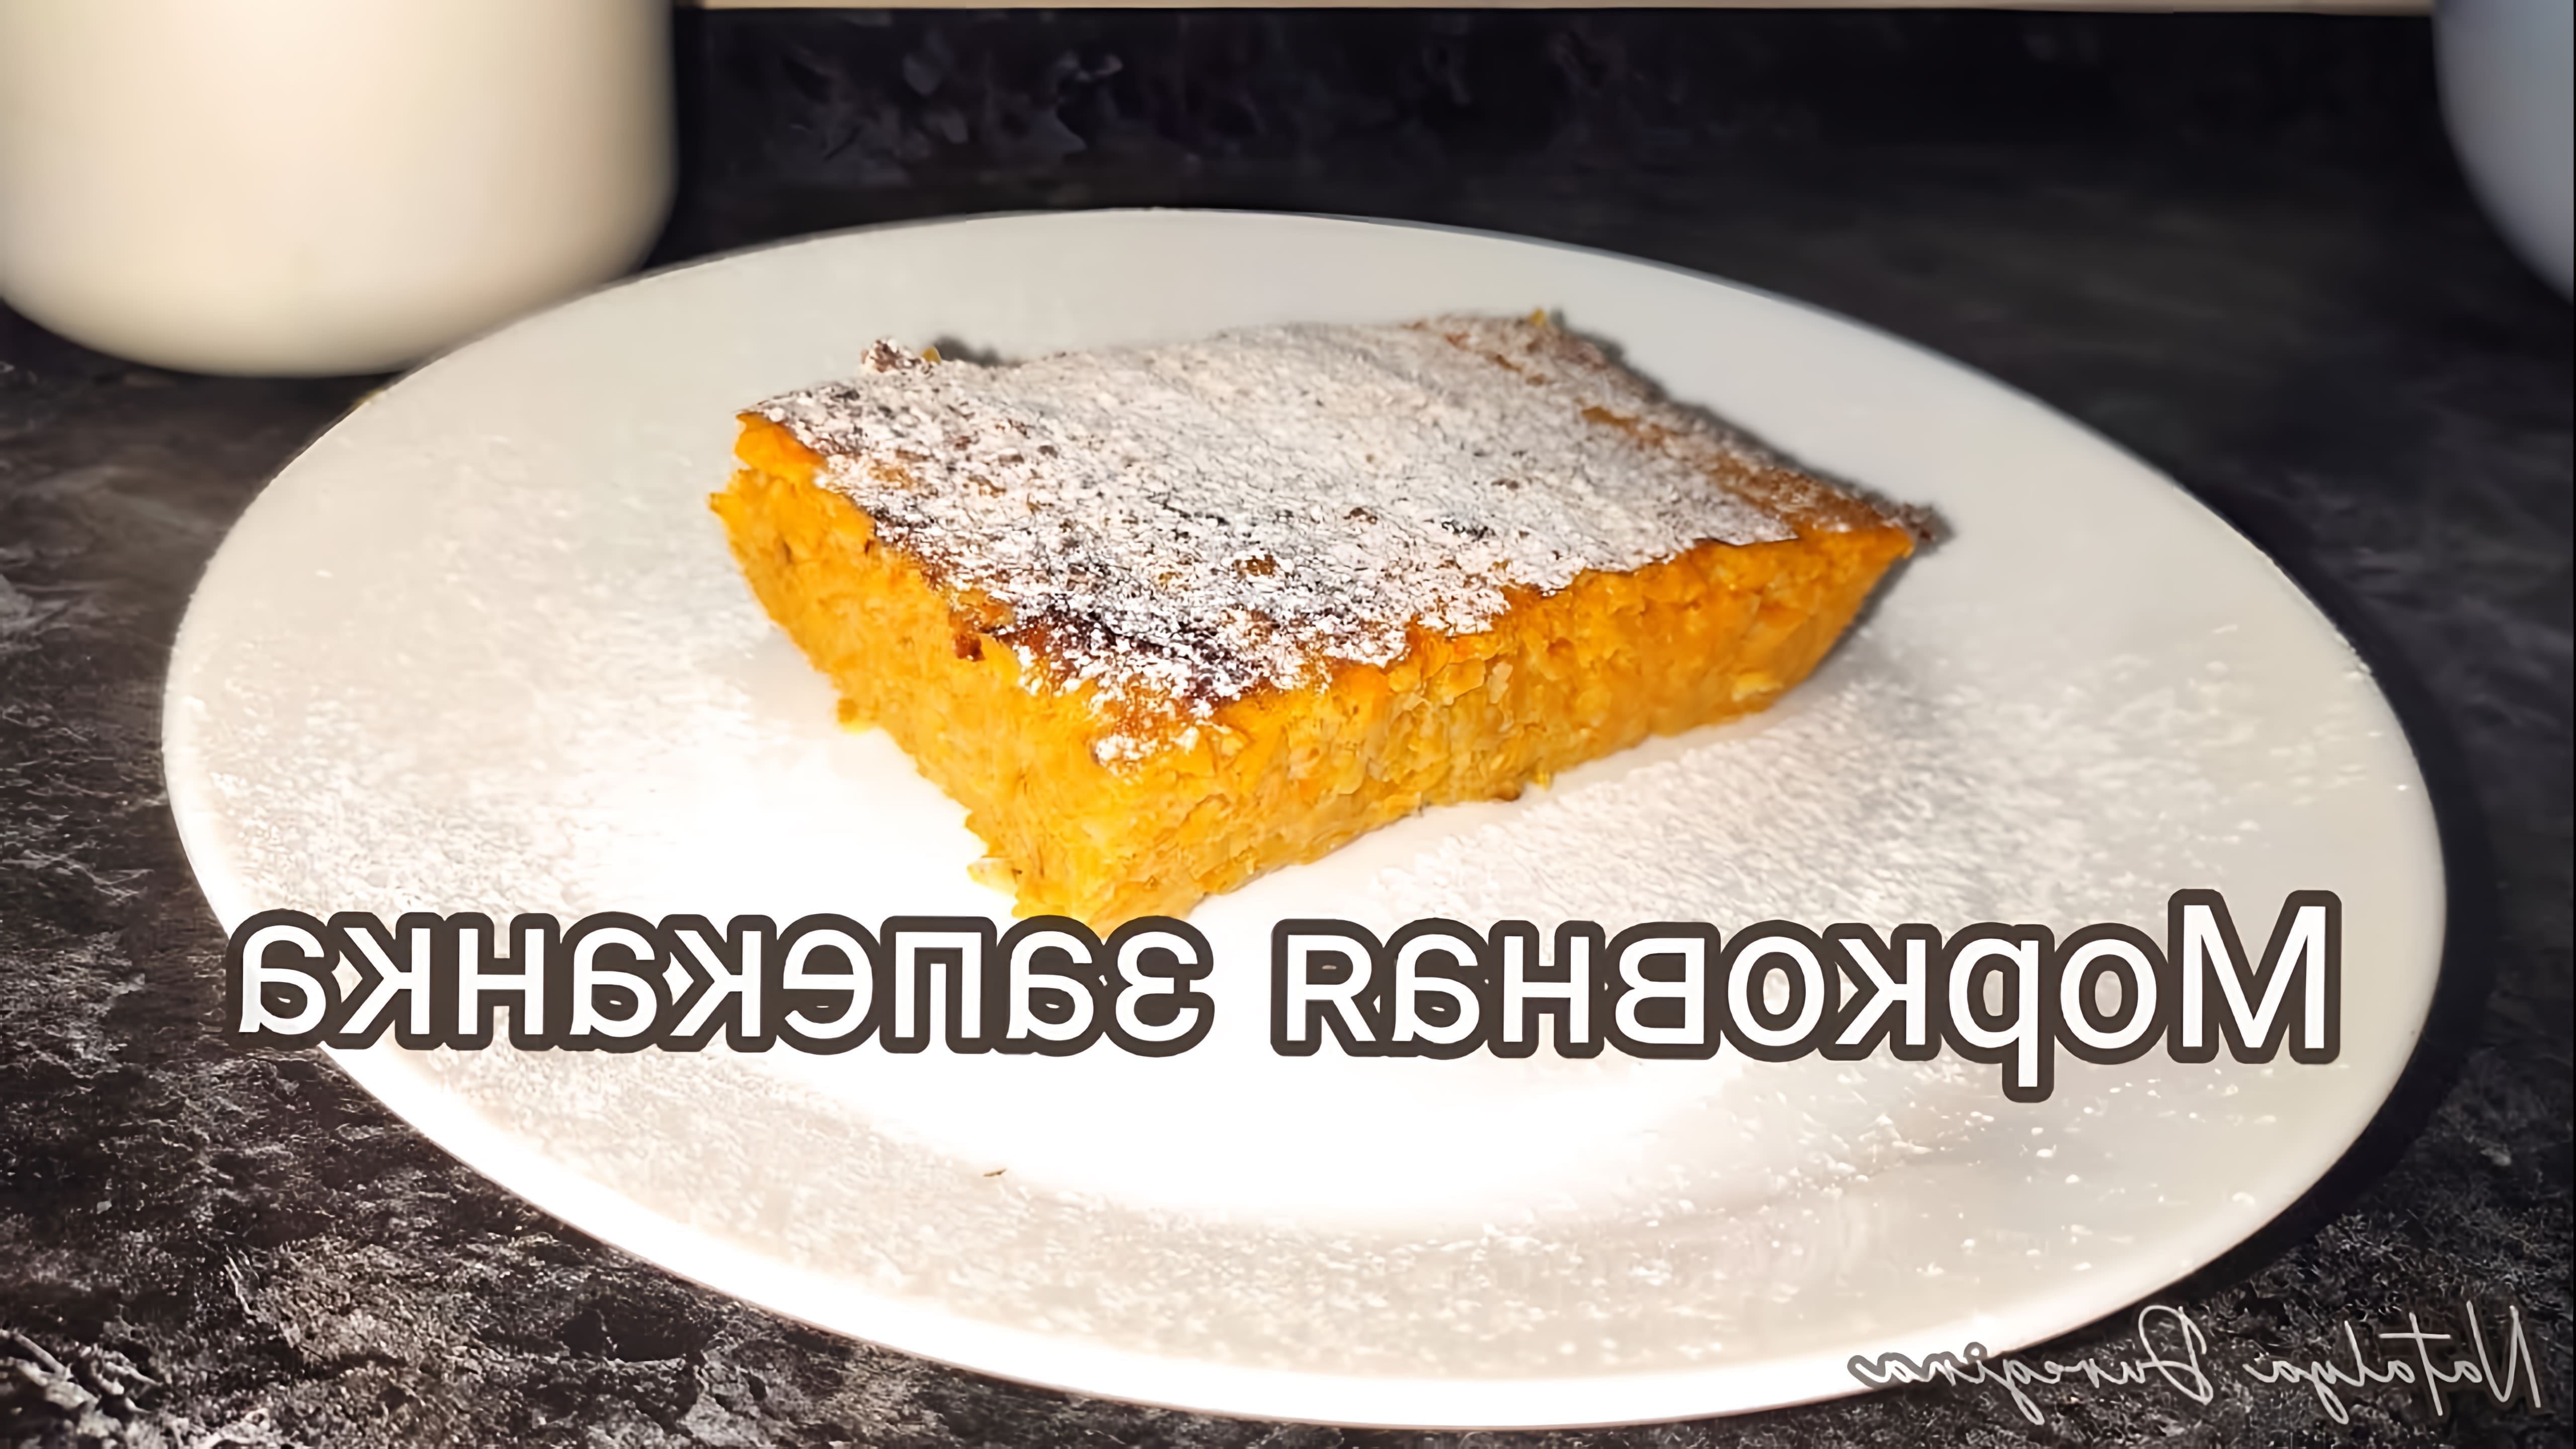 В этом видео-ролике рассказывается о рецепте морковной запеканки, которая получается очень нежной и вкусной